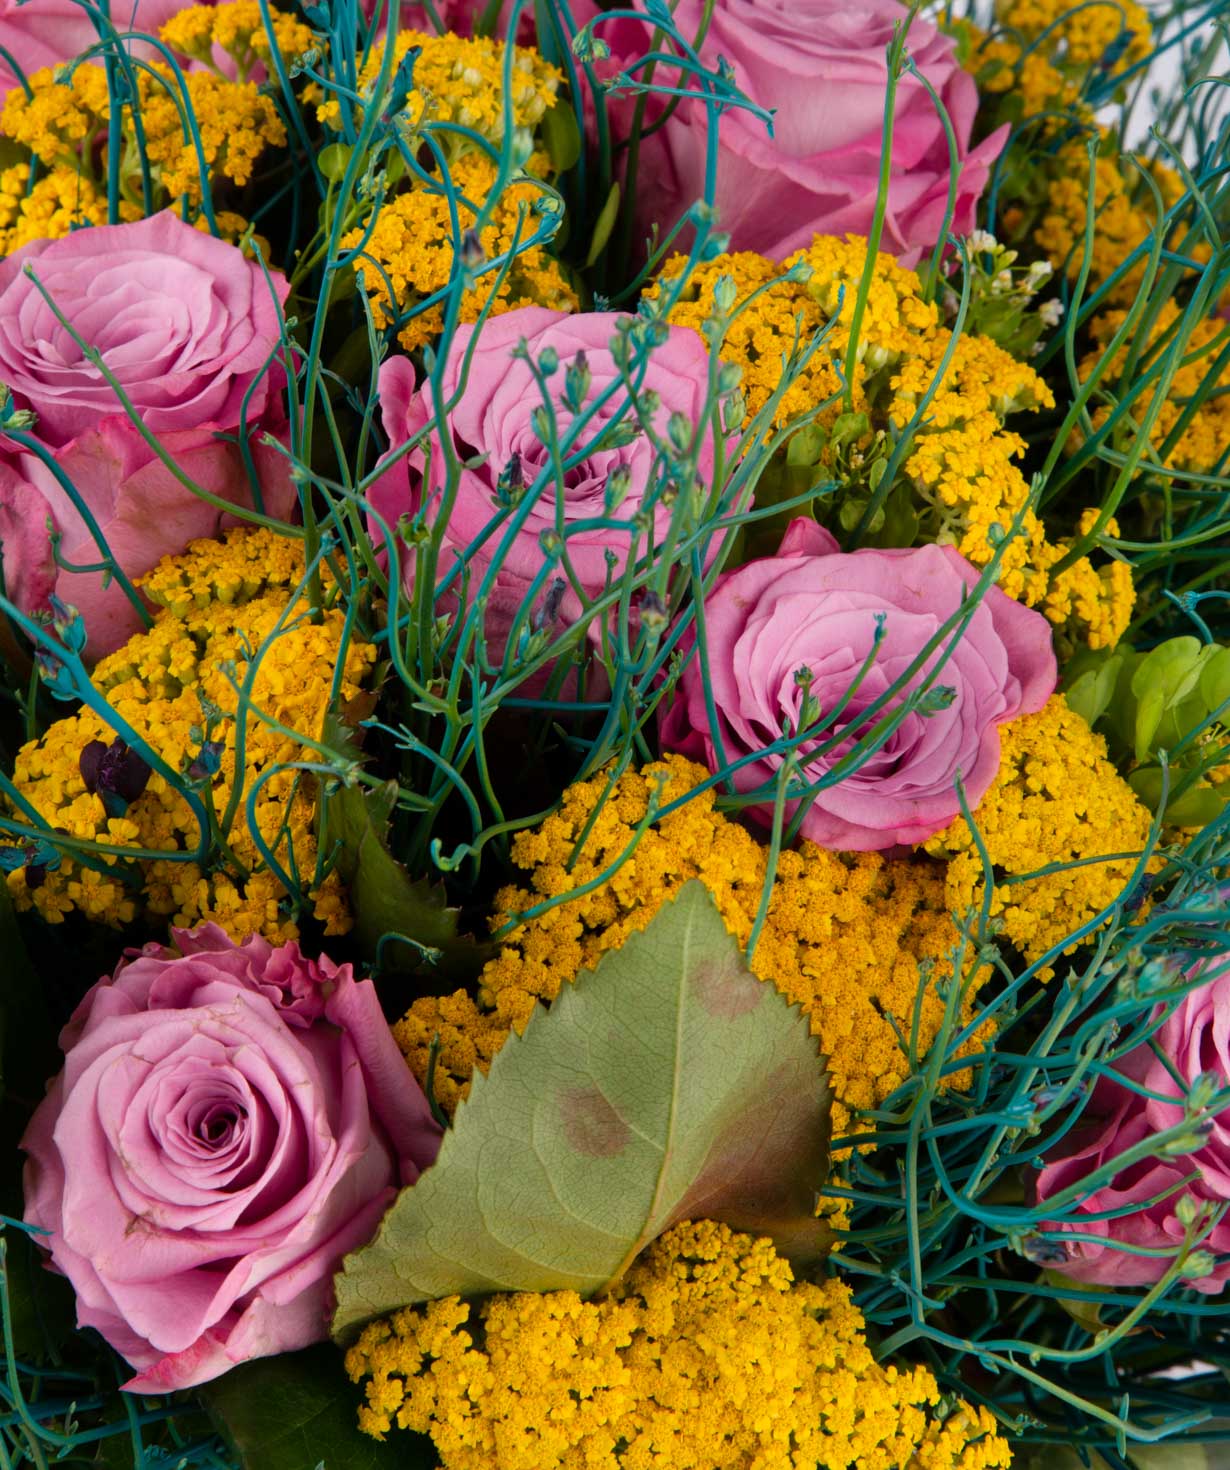 Ծաղկեփունջ «Գեյնսվիլլ» վարդերով և դաշտային ծաղիկներով